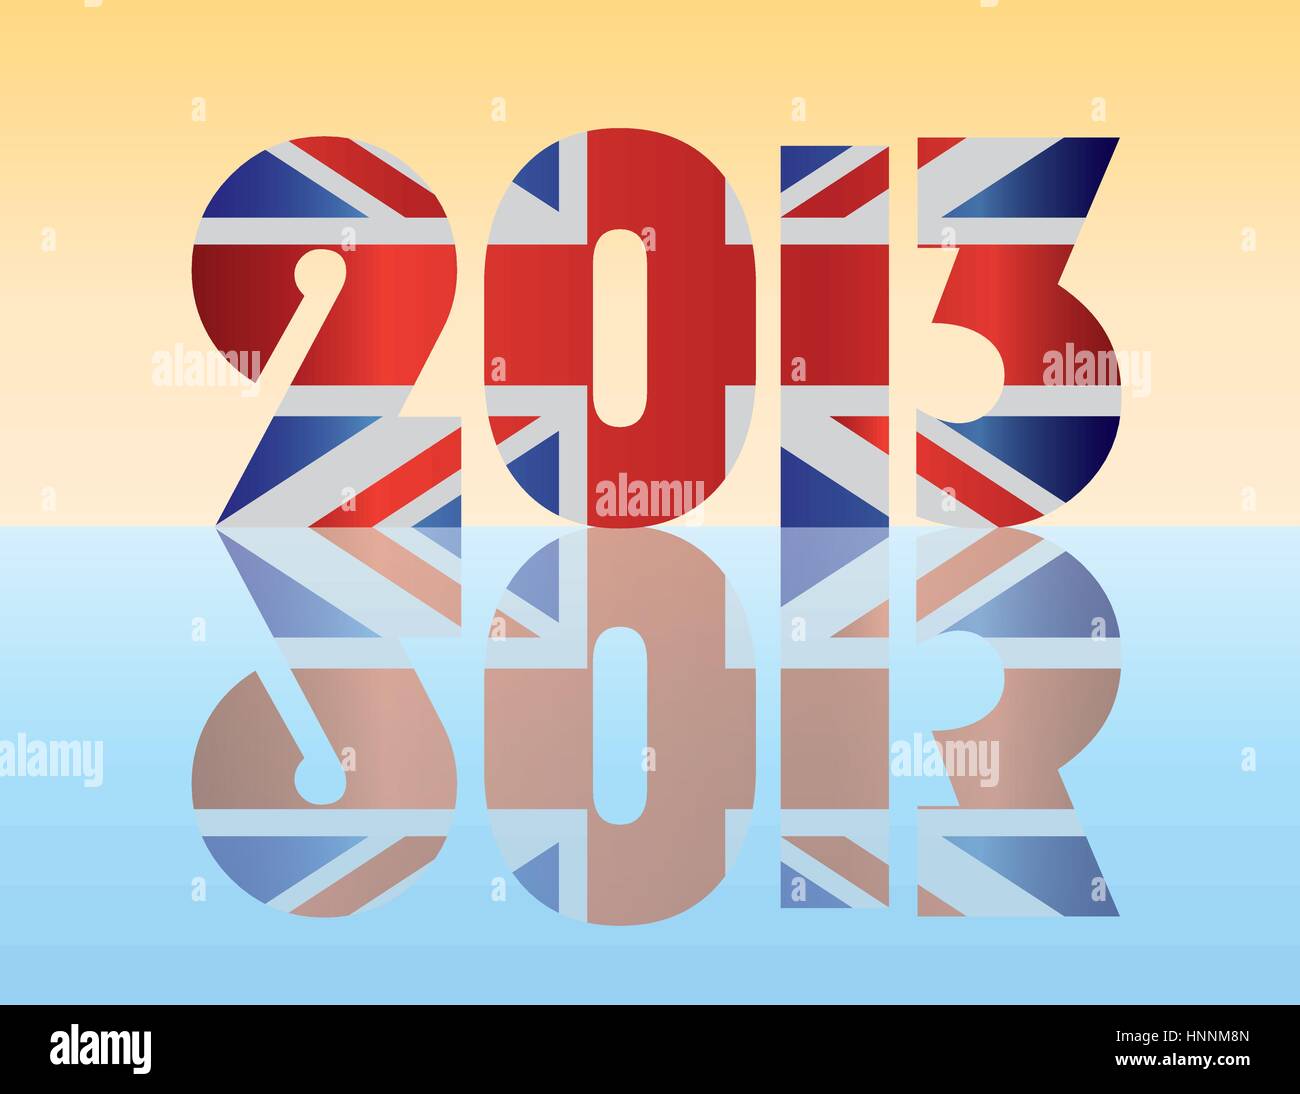 Felice Anno Nuovo Londra Inghilterra 2013 Silhouette con Union Jack Flag illustrazione Illustrazione Vettoriale